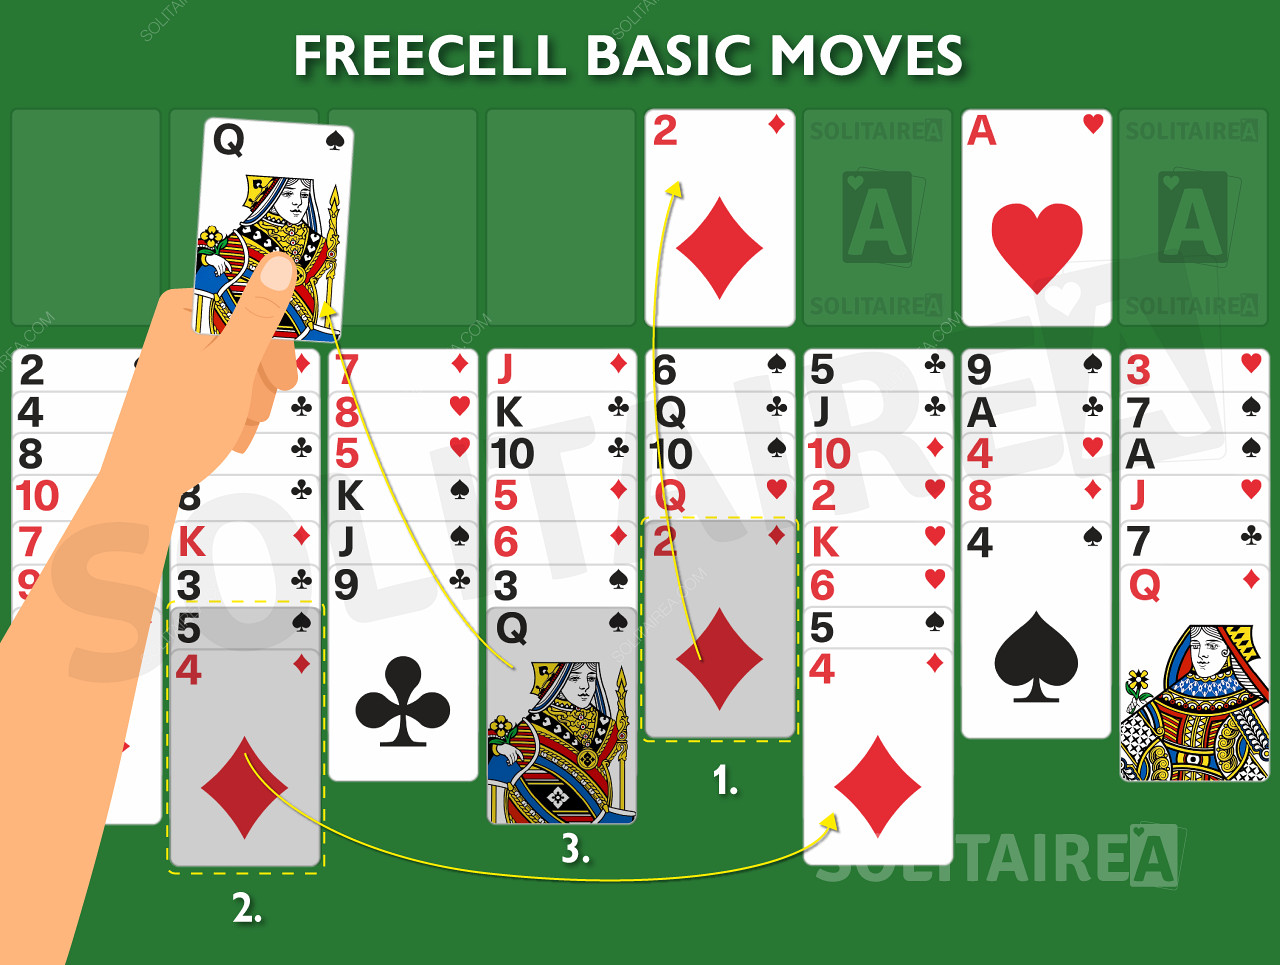 Immagine di gioco che mostra le regole di base in azione